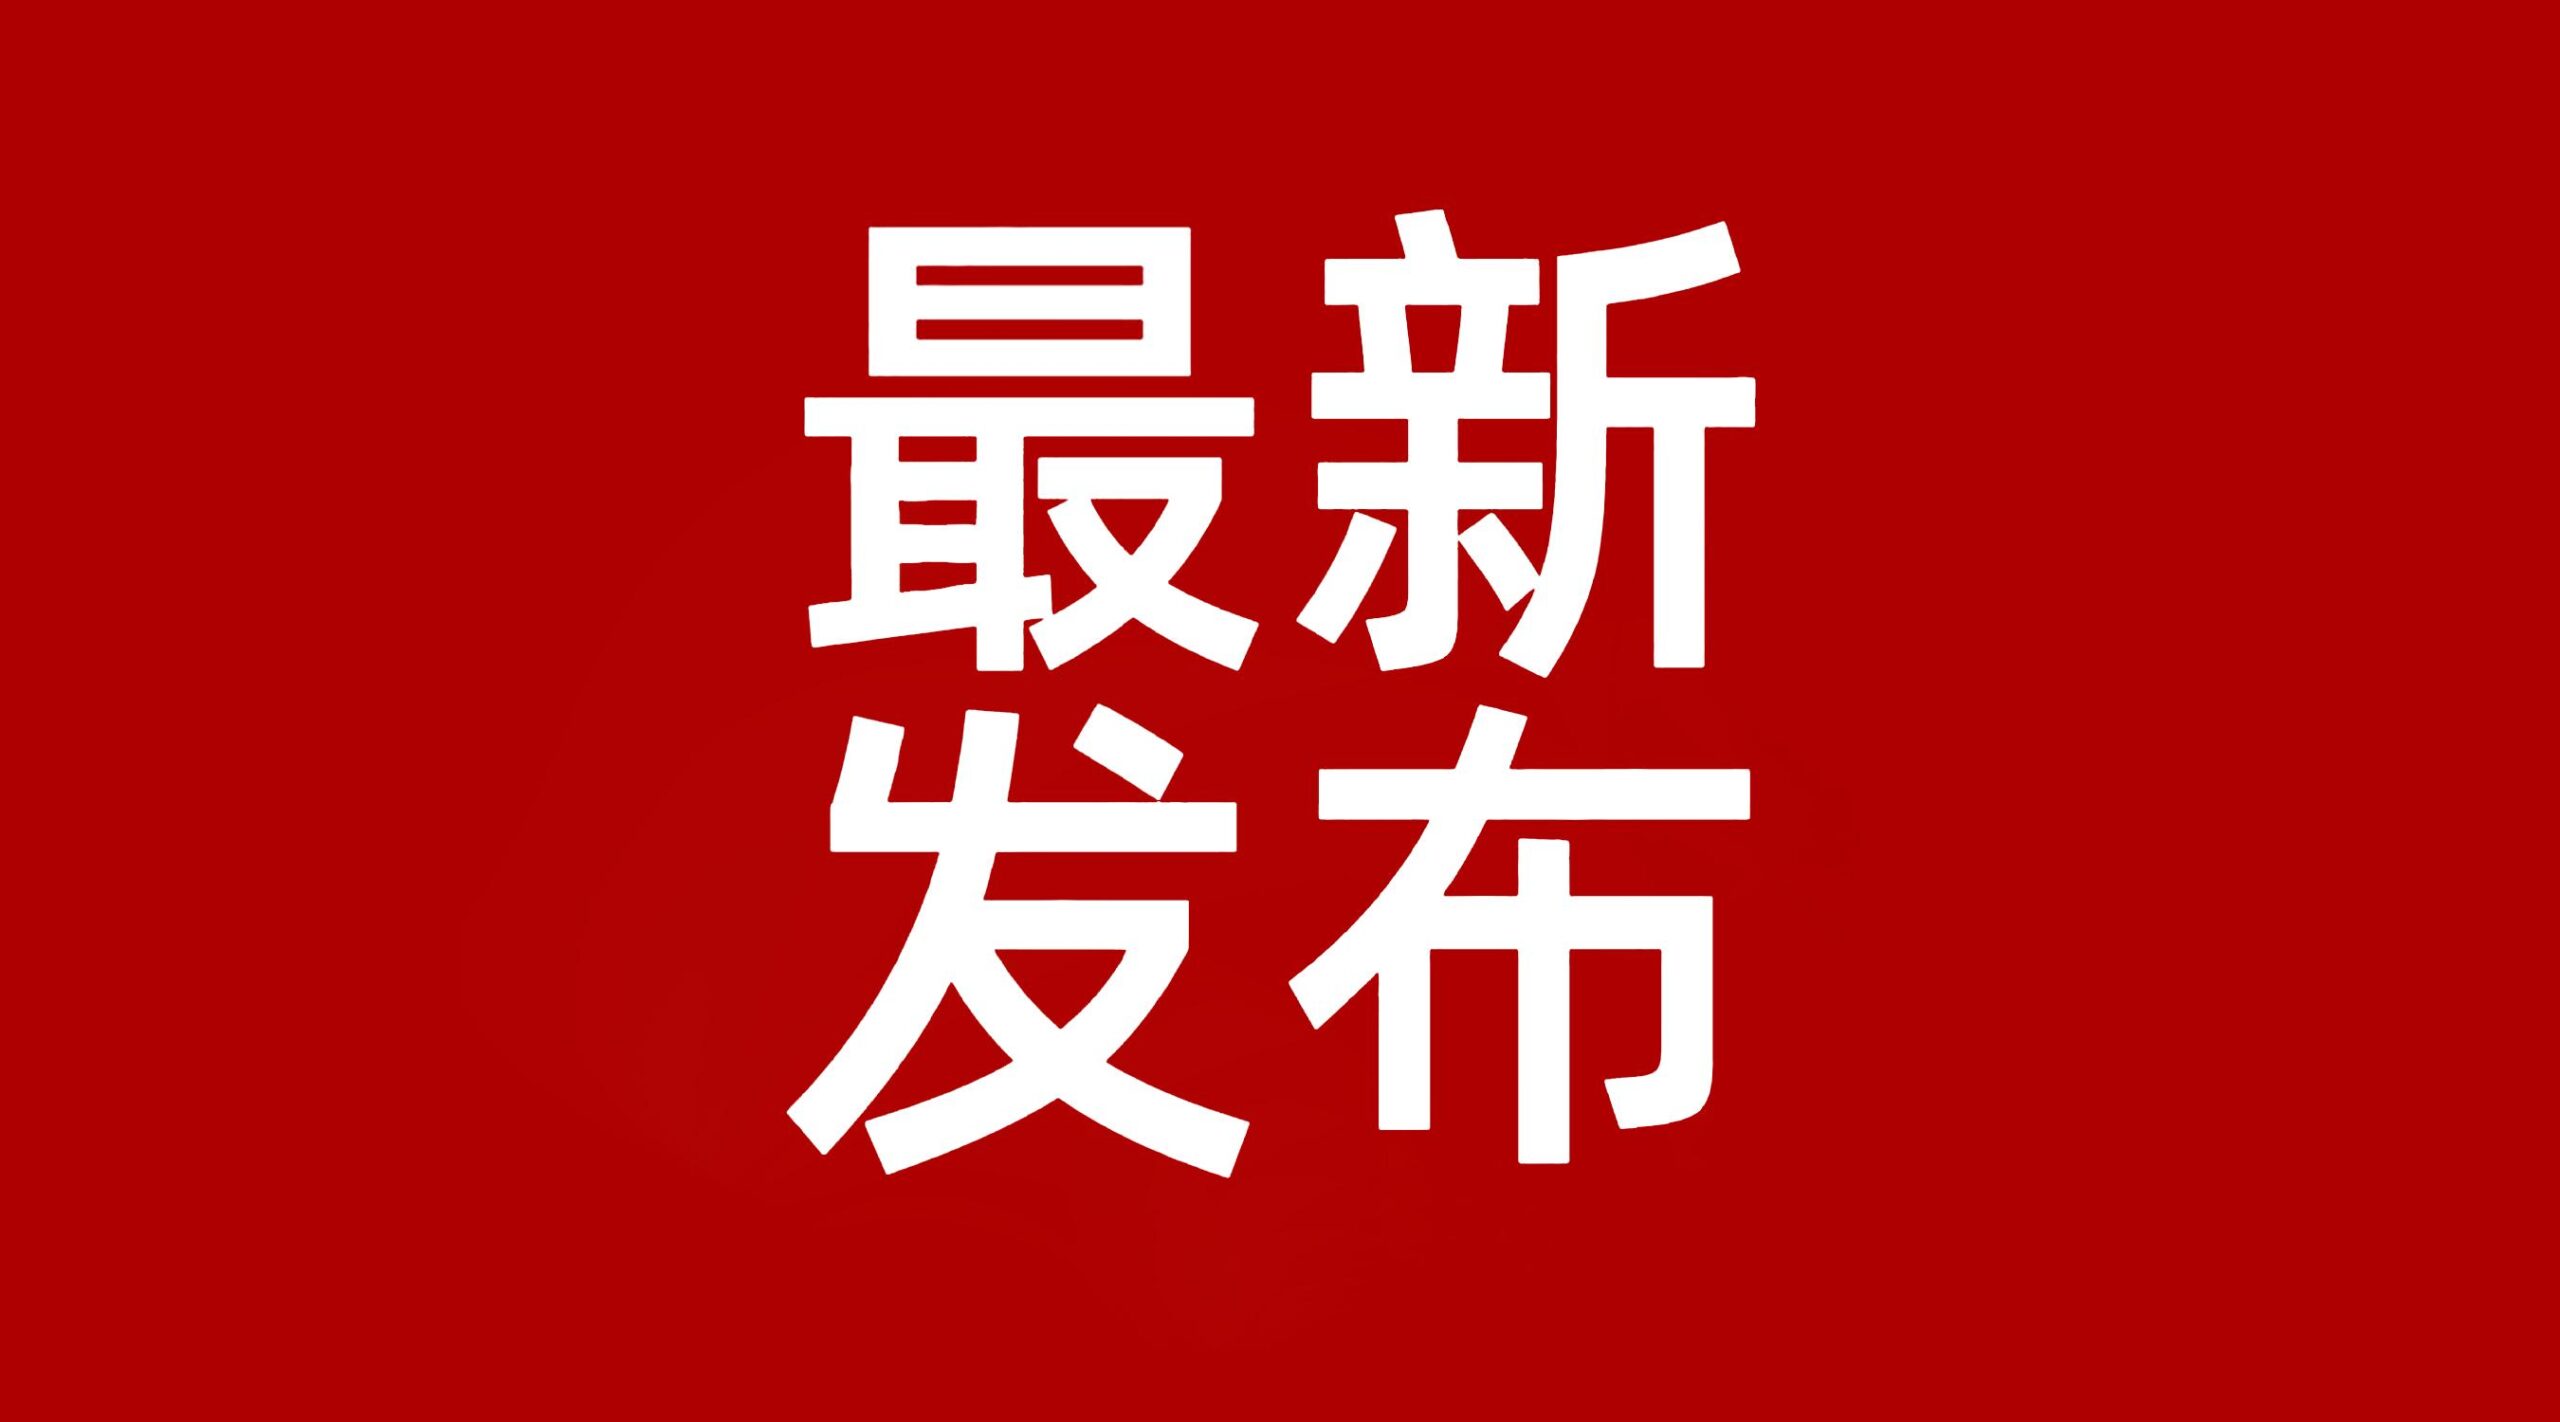 富平县发布禁止燃放烟花爆竹倡议